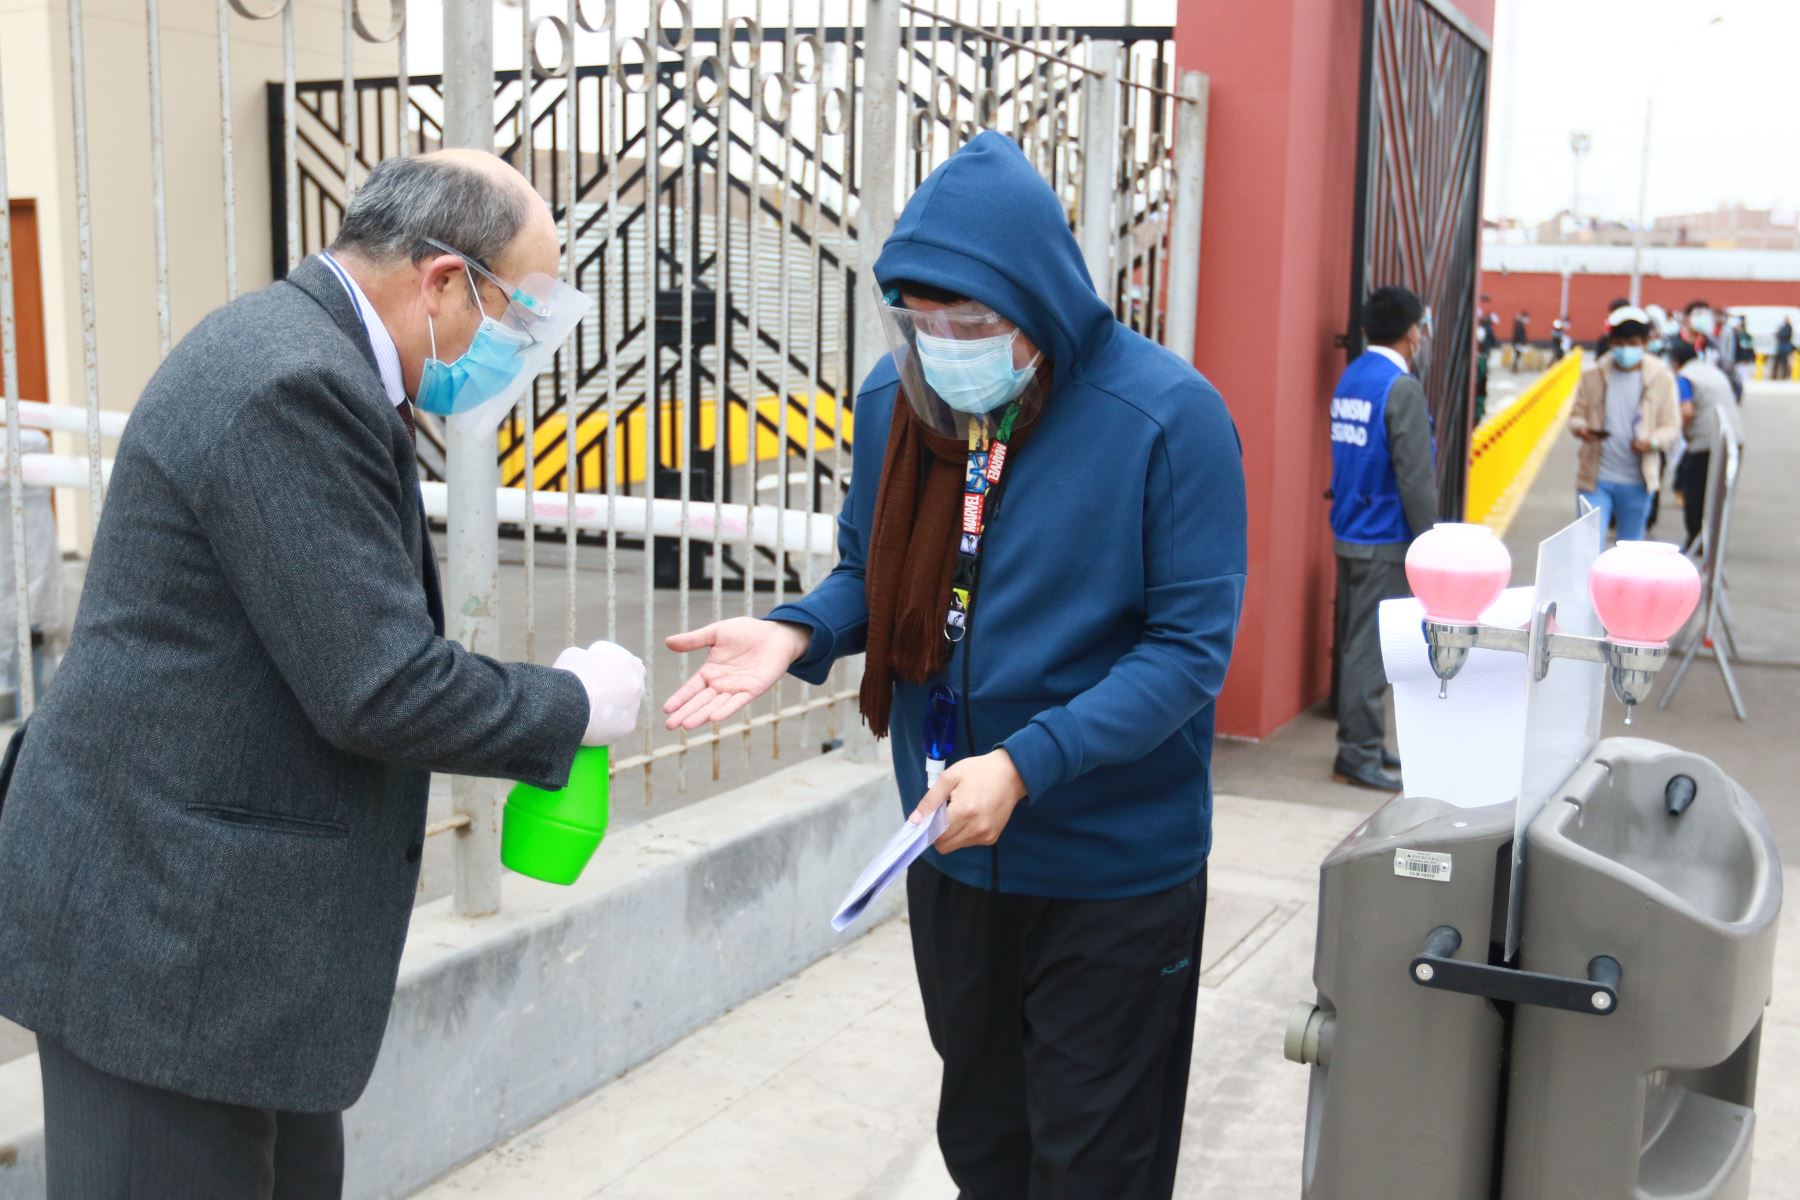 Postulantes a la UNMSM rinden primer examen de admisión acatando medidas de bioseguridad frente a la pandemia. Foto: ANDINA/Jhonel Rodríguez